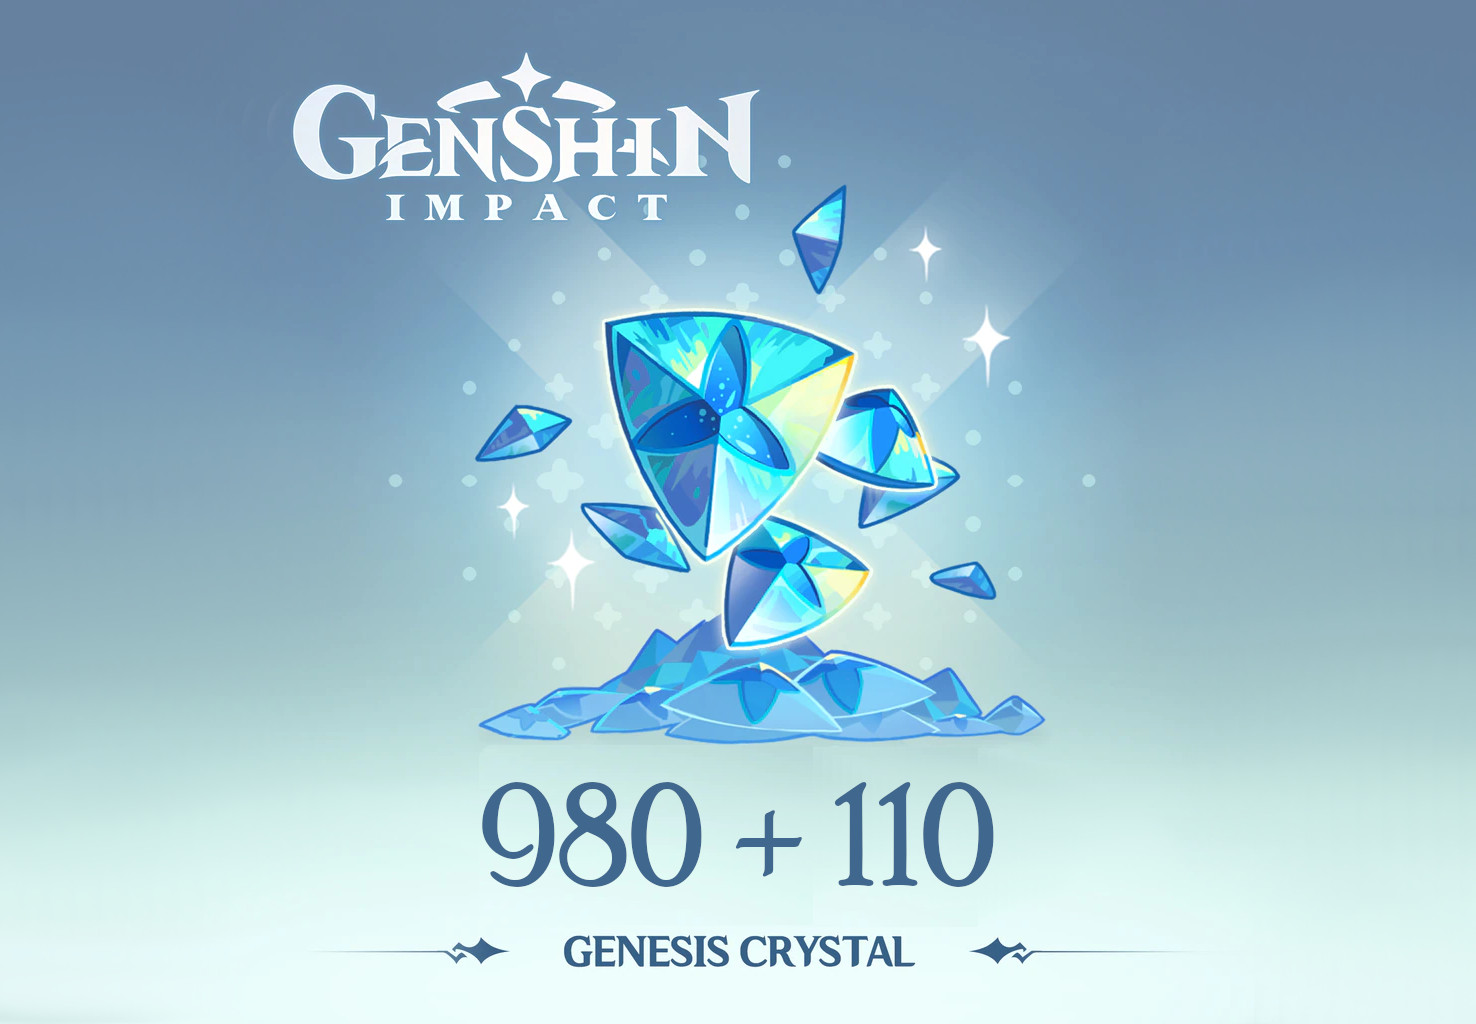 Genshin Impact - 980 + 110 Genesis Crystals Reidos Voucher 17.23$